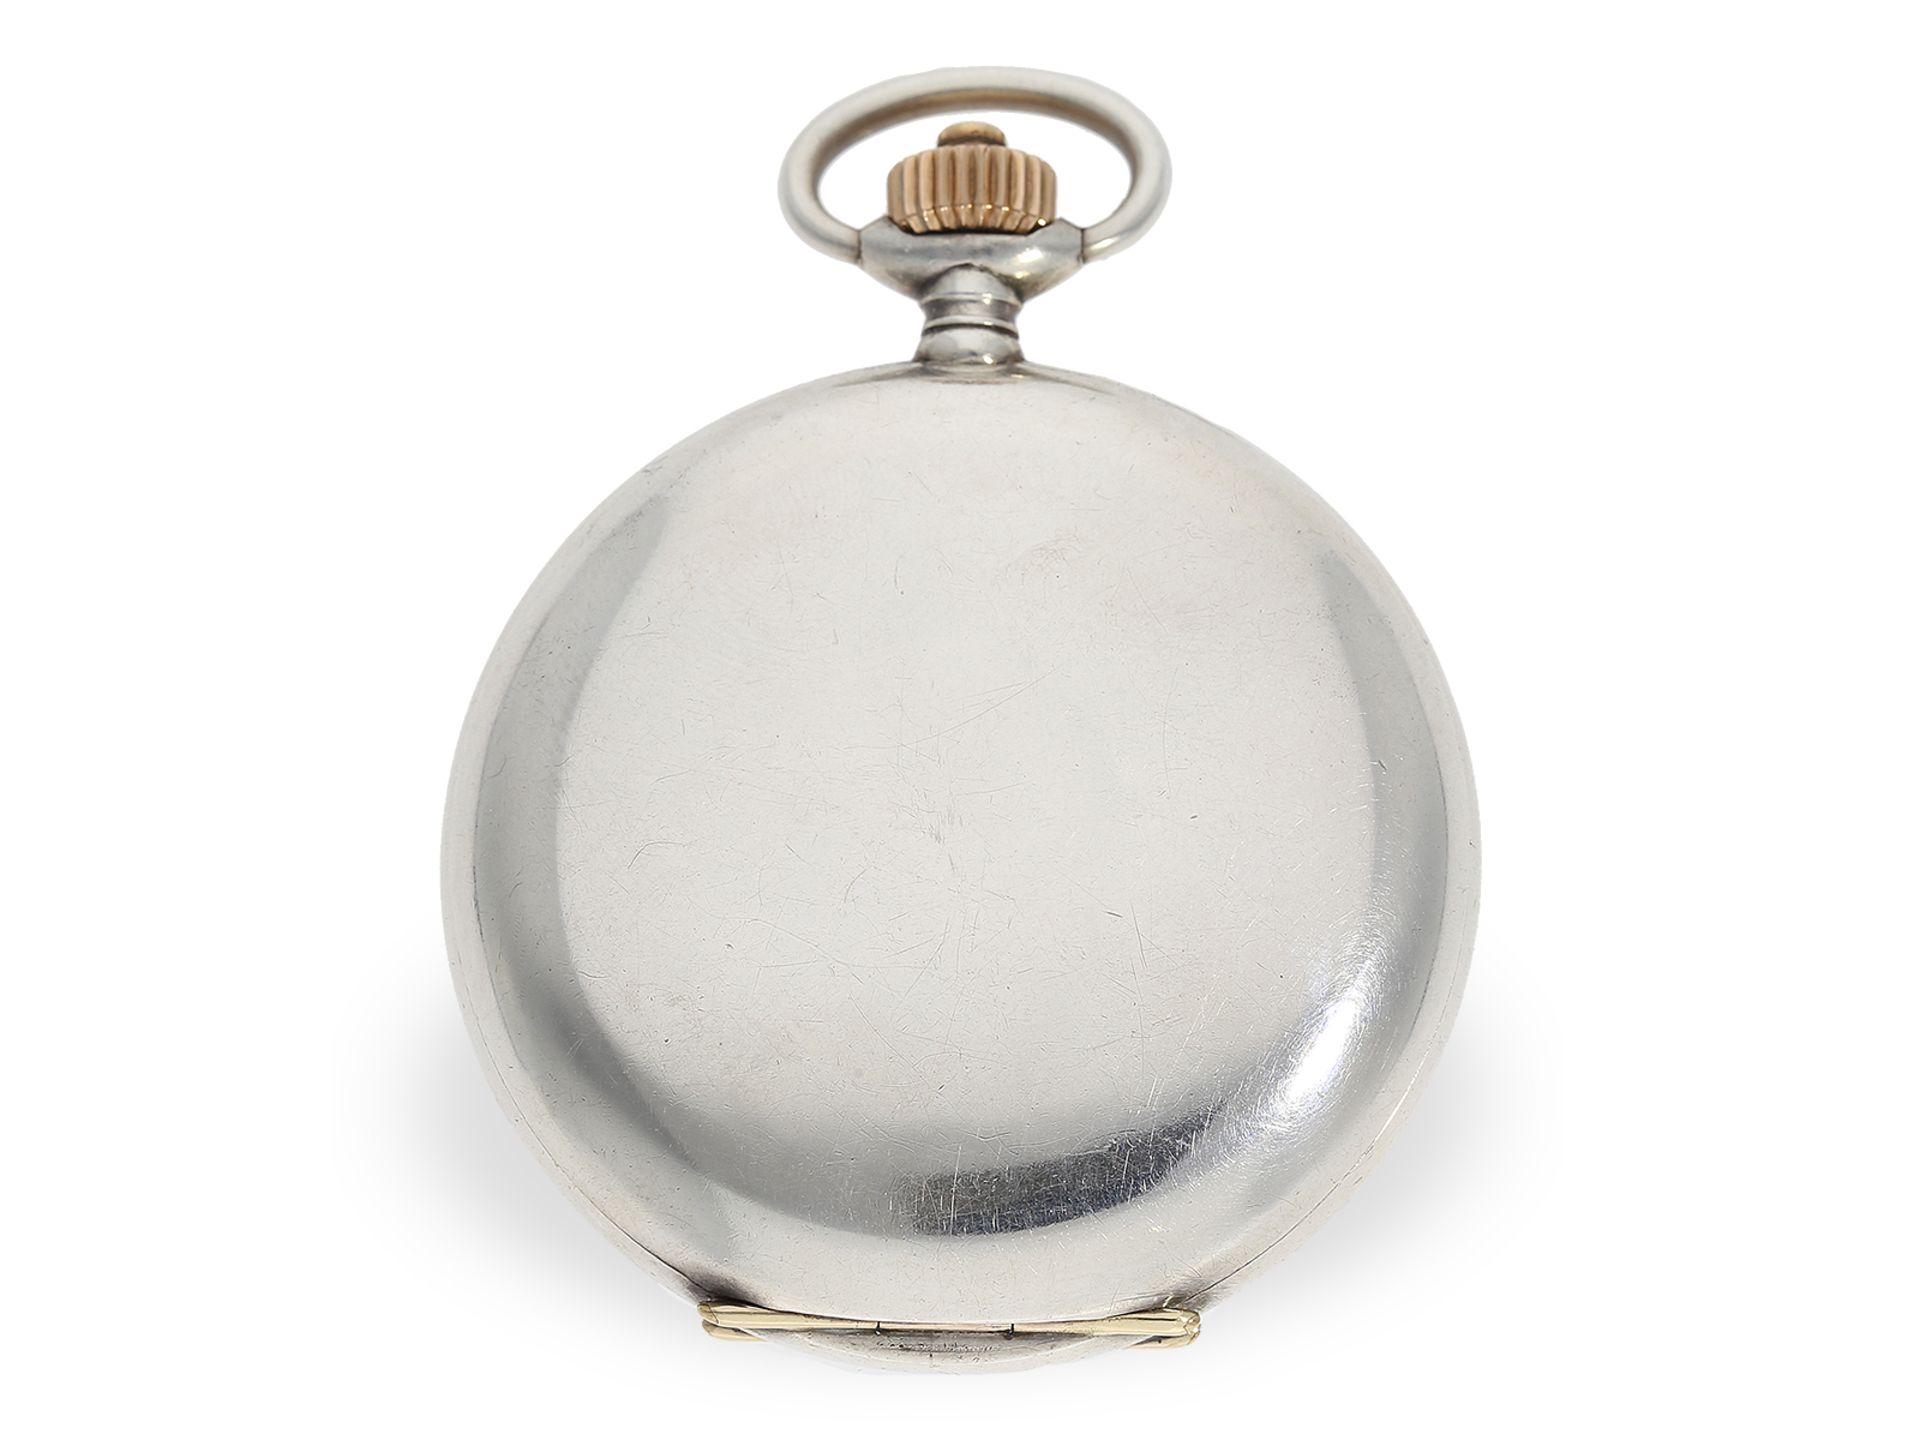 Glashütter Rarität, eine von lediglich 2 bekannten Präzisionstaschenuhren der Deutschen Uhrmachersch - Bild 5 aus 6